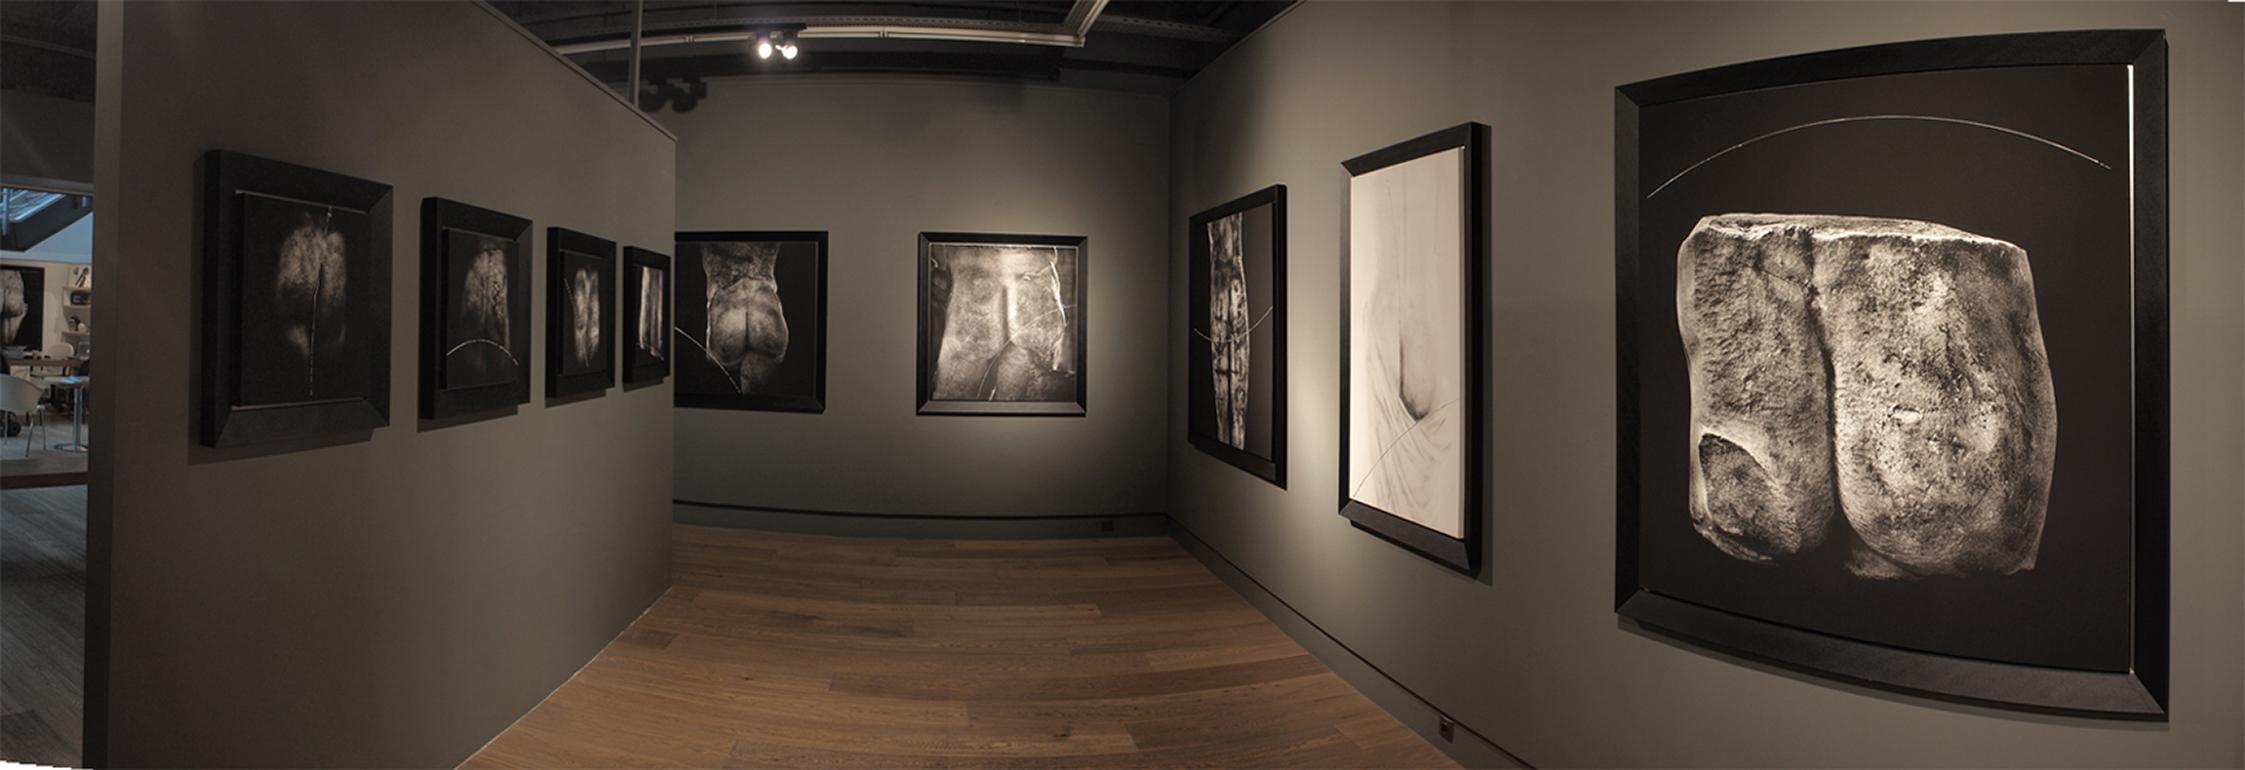 Serie Stone Faces aus Stein (Schwarz), Black and White Photograph, von Kamil Fırat